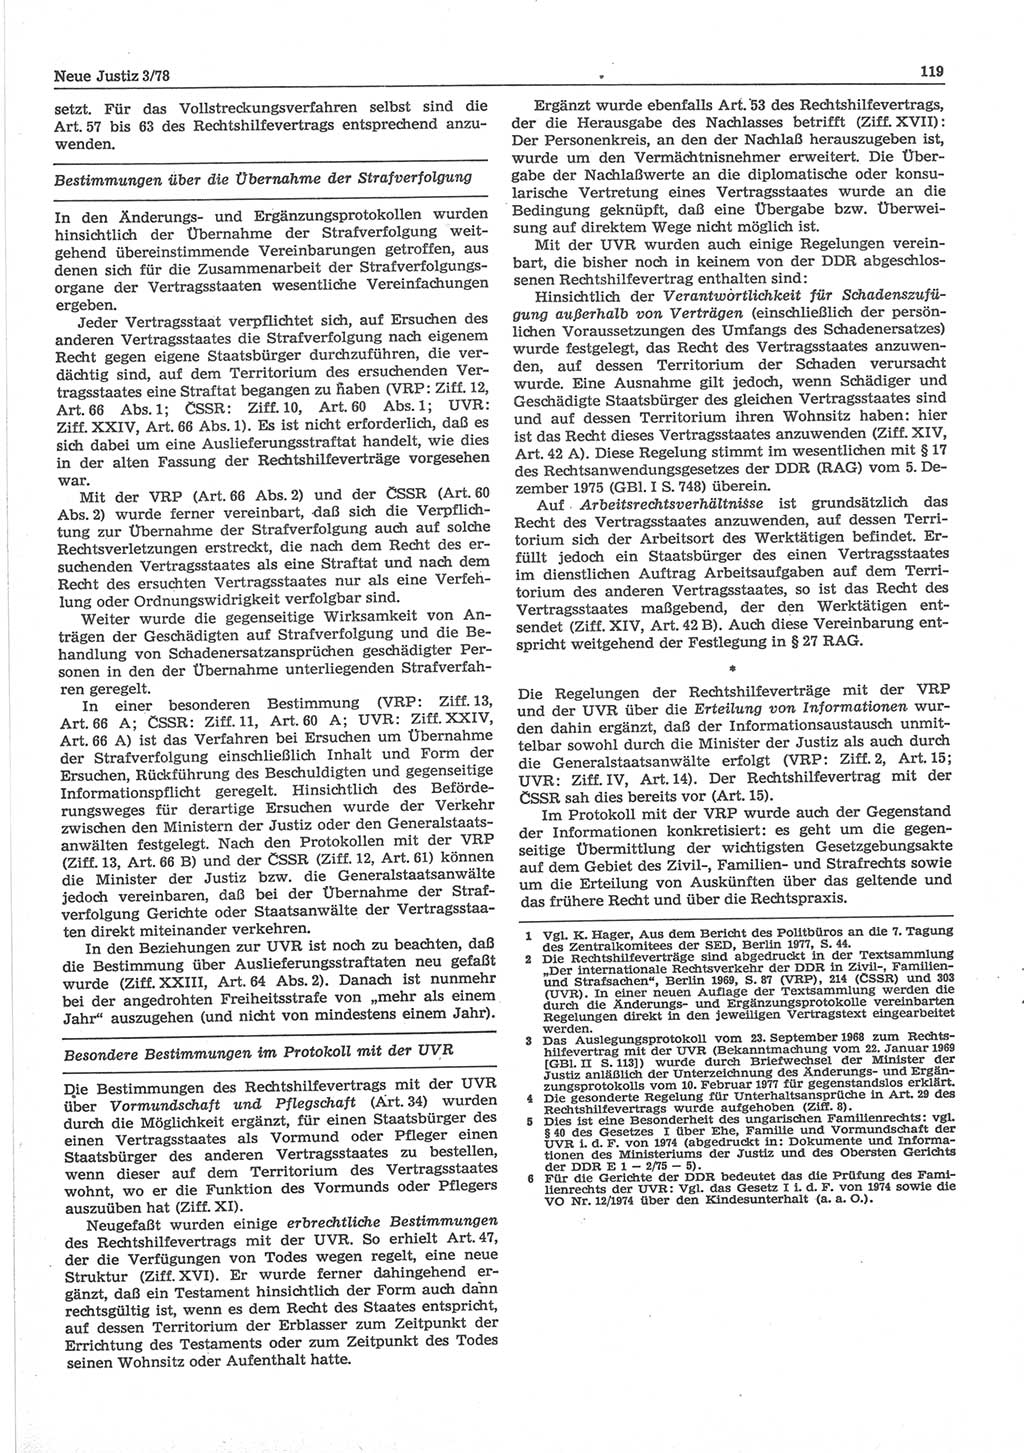 Neue Justiz (NJ), Zeitschrift für sozialistisches Recht und Gesetzlichkeit [Deutsche Demokratische Republik (DDR)], 32. Jahrgang 1978, Seite 119 (NJ DDR 1978, S. 119)